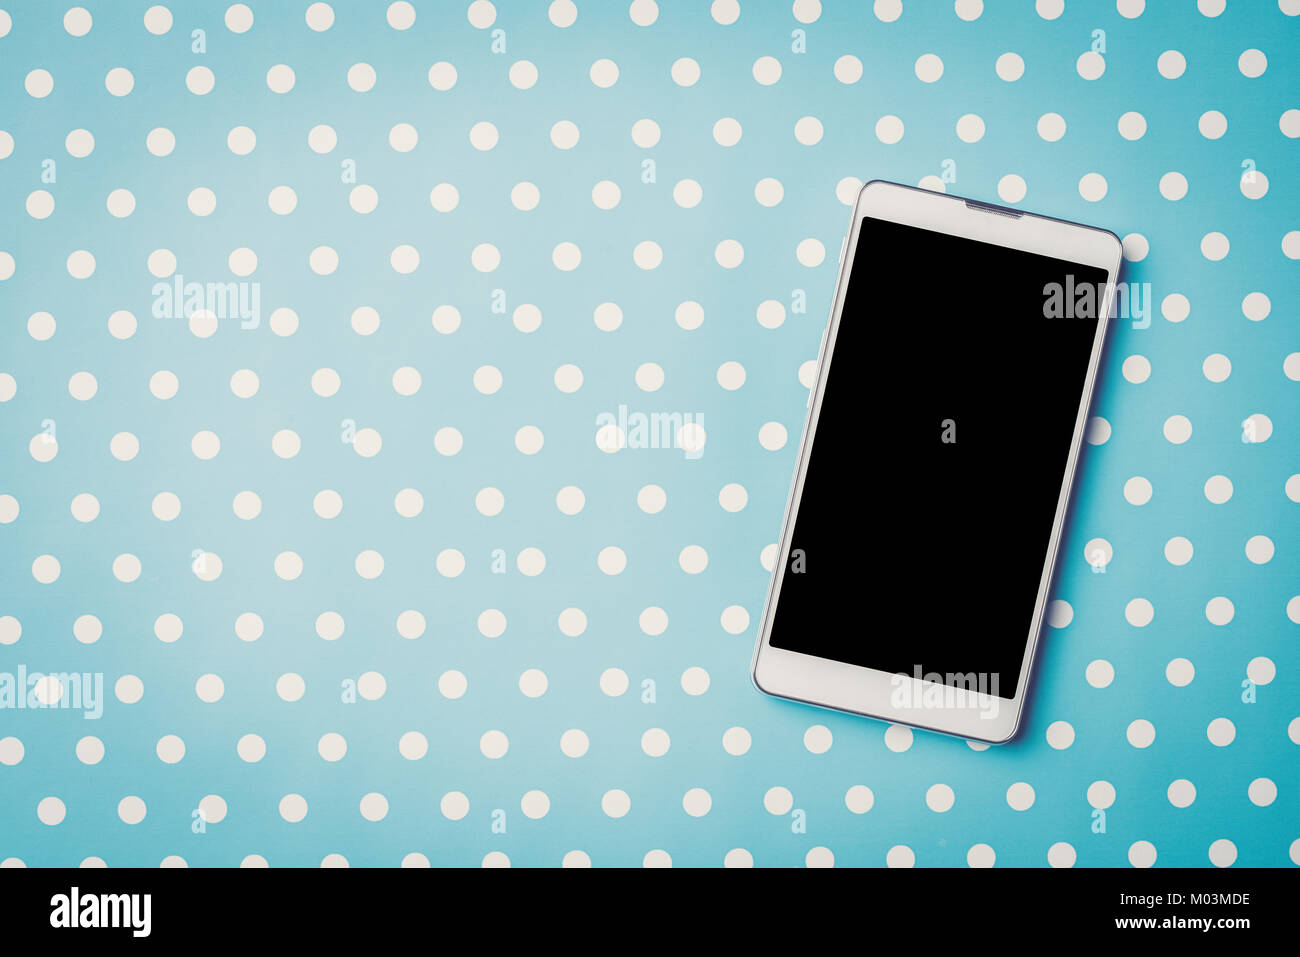 White Mobiltelefon über blau gepunkteten Hintergrund Stockfoto